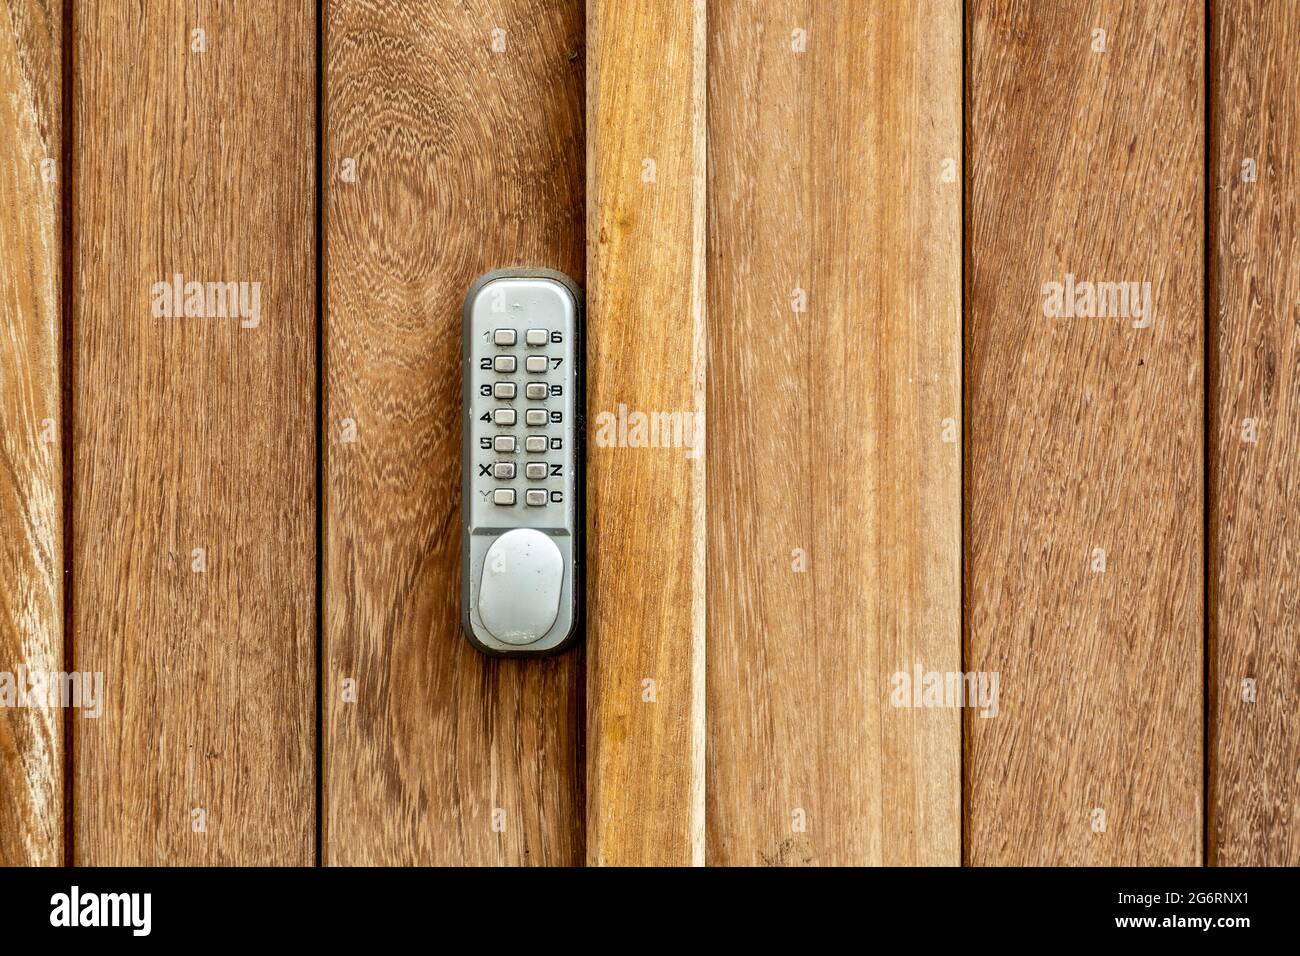 Ein Codeschloss auf Knopfdruck an einer Holztür Stockfoto